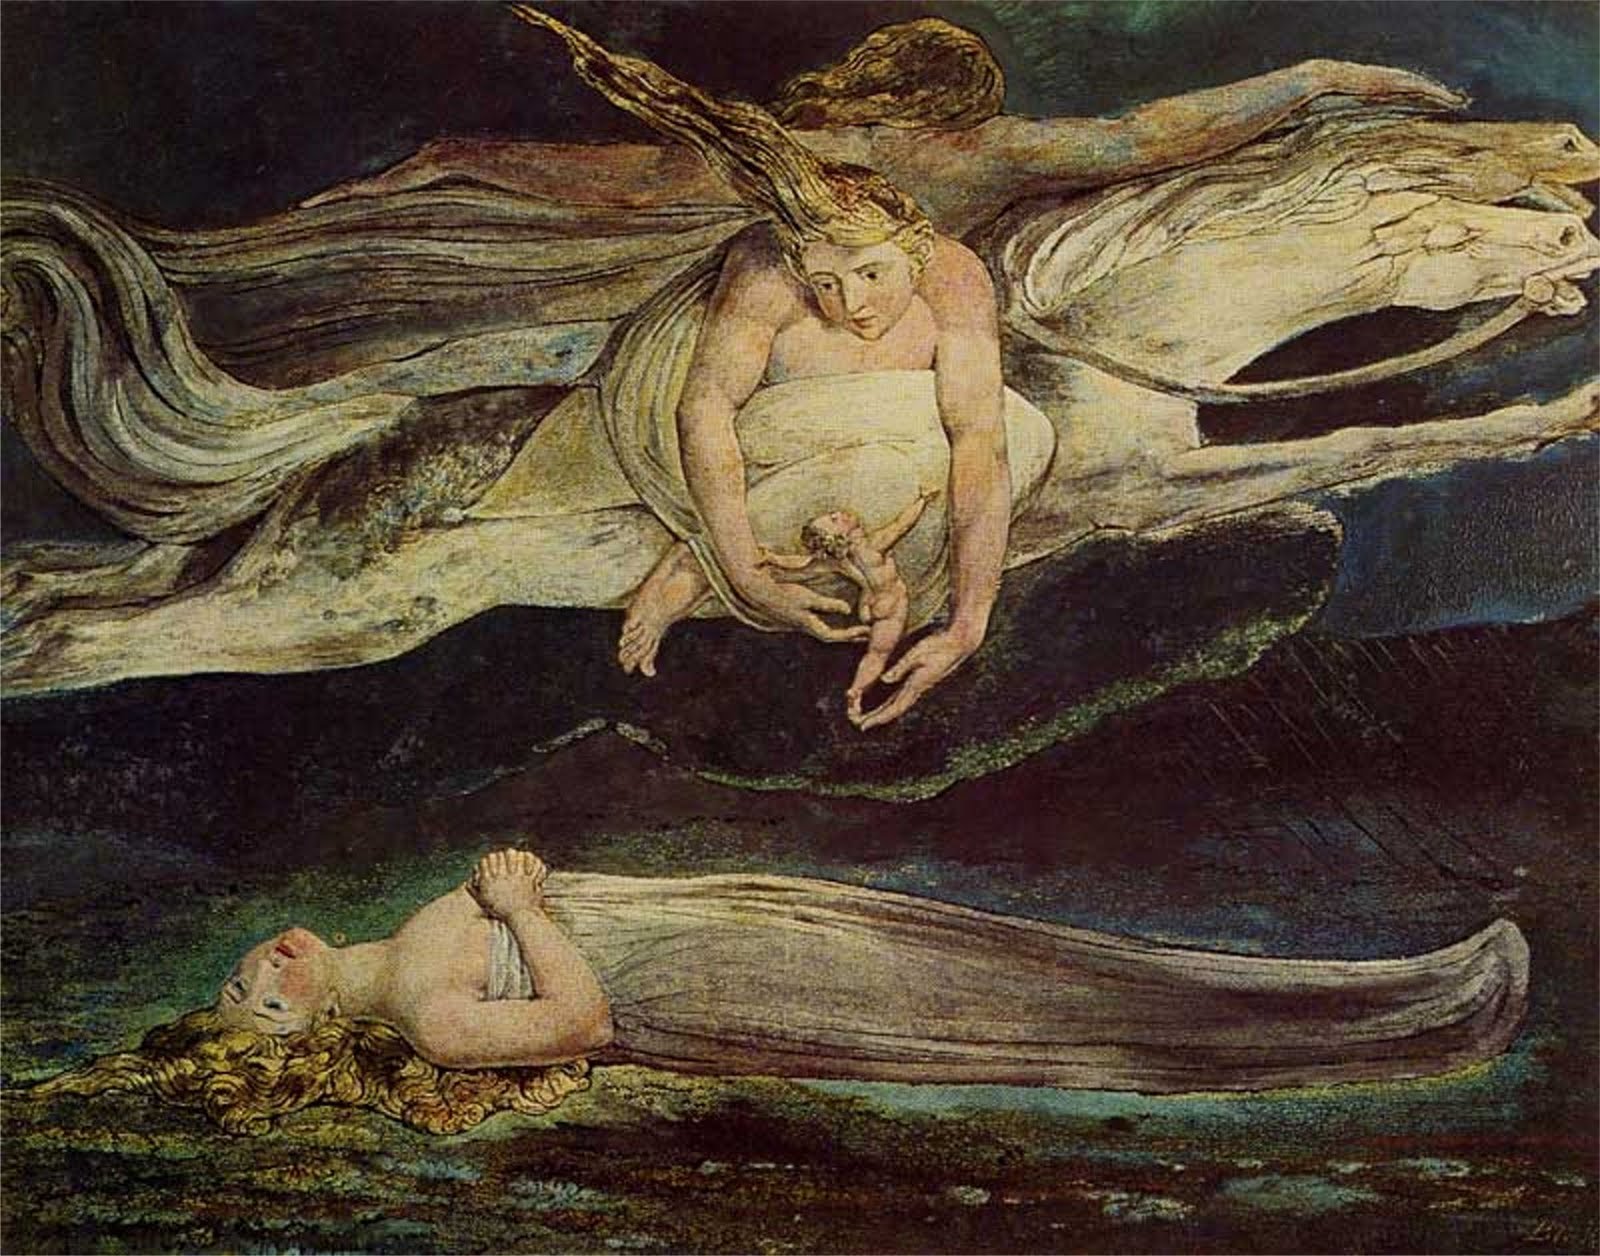 Piéta by William Blake - 1795 - - 